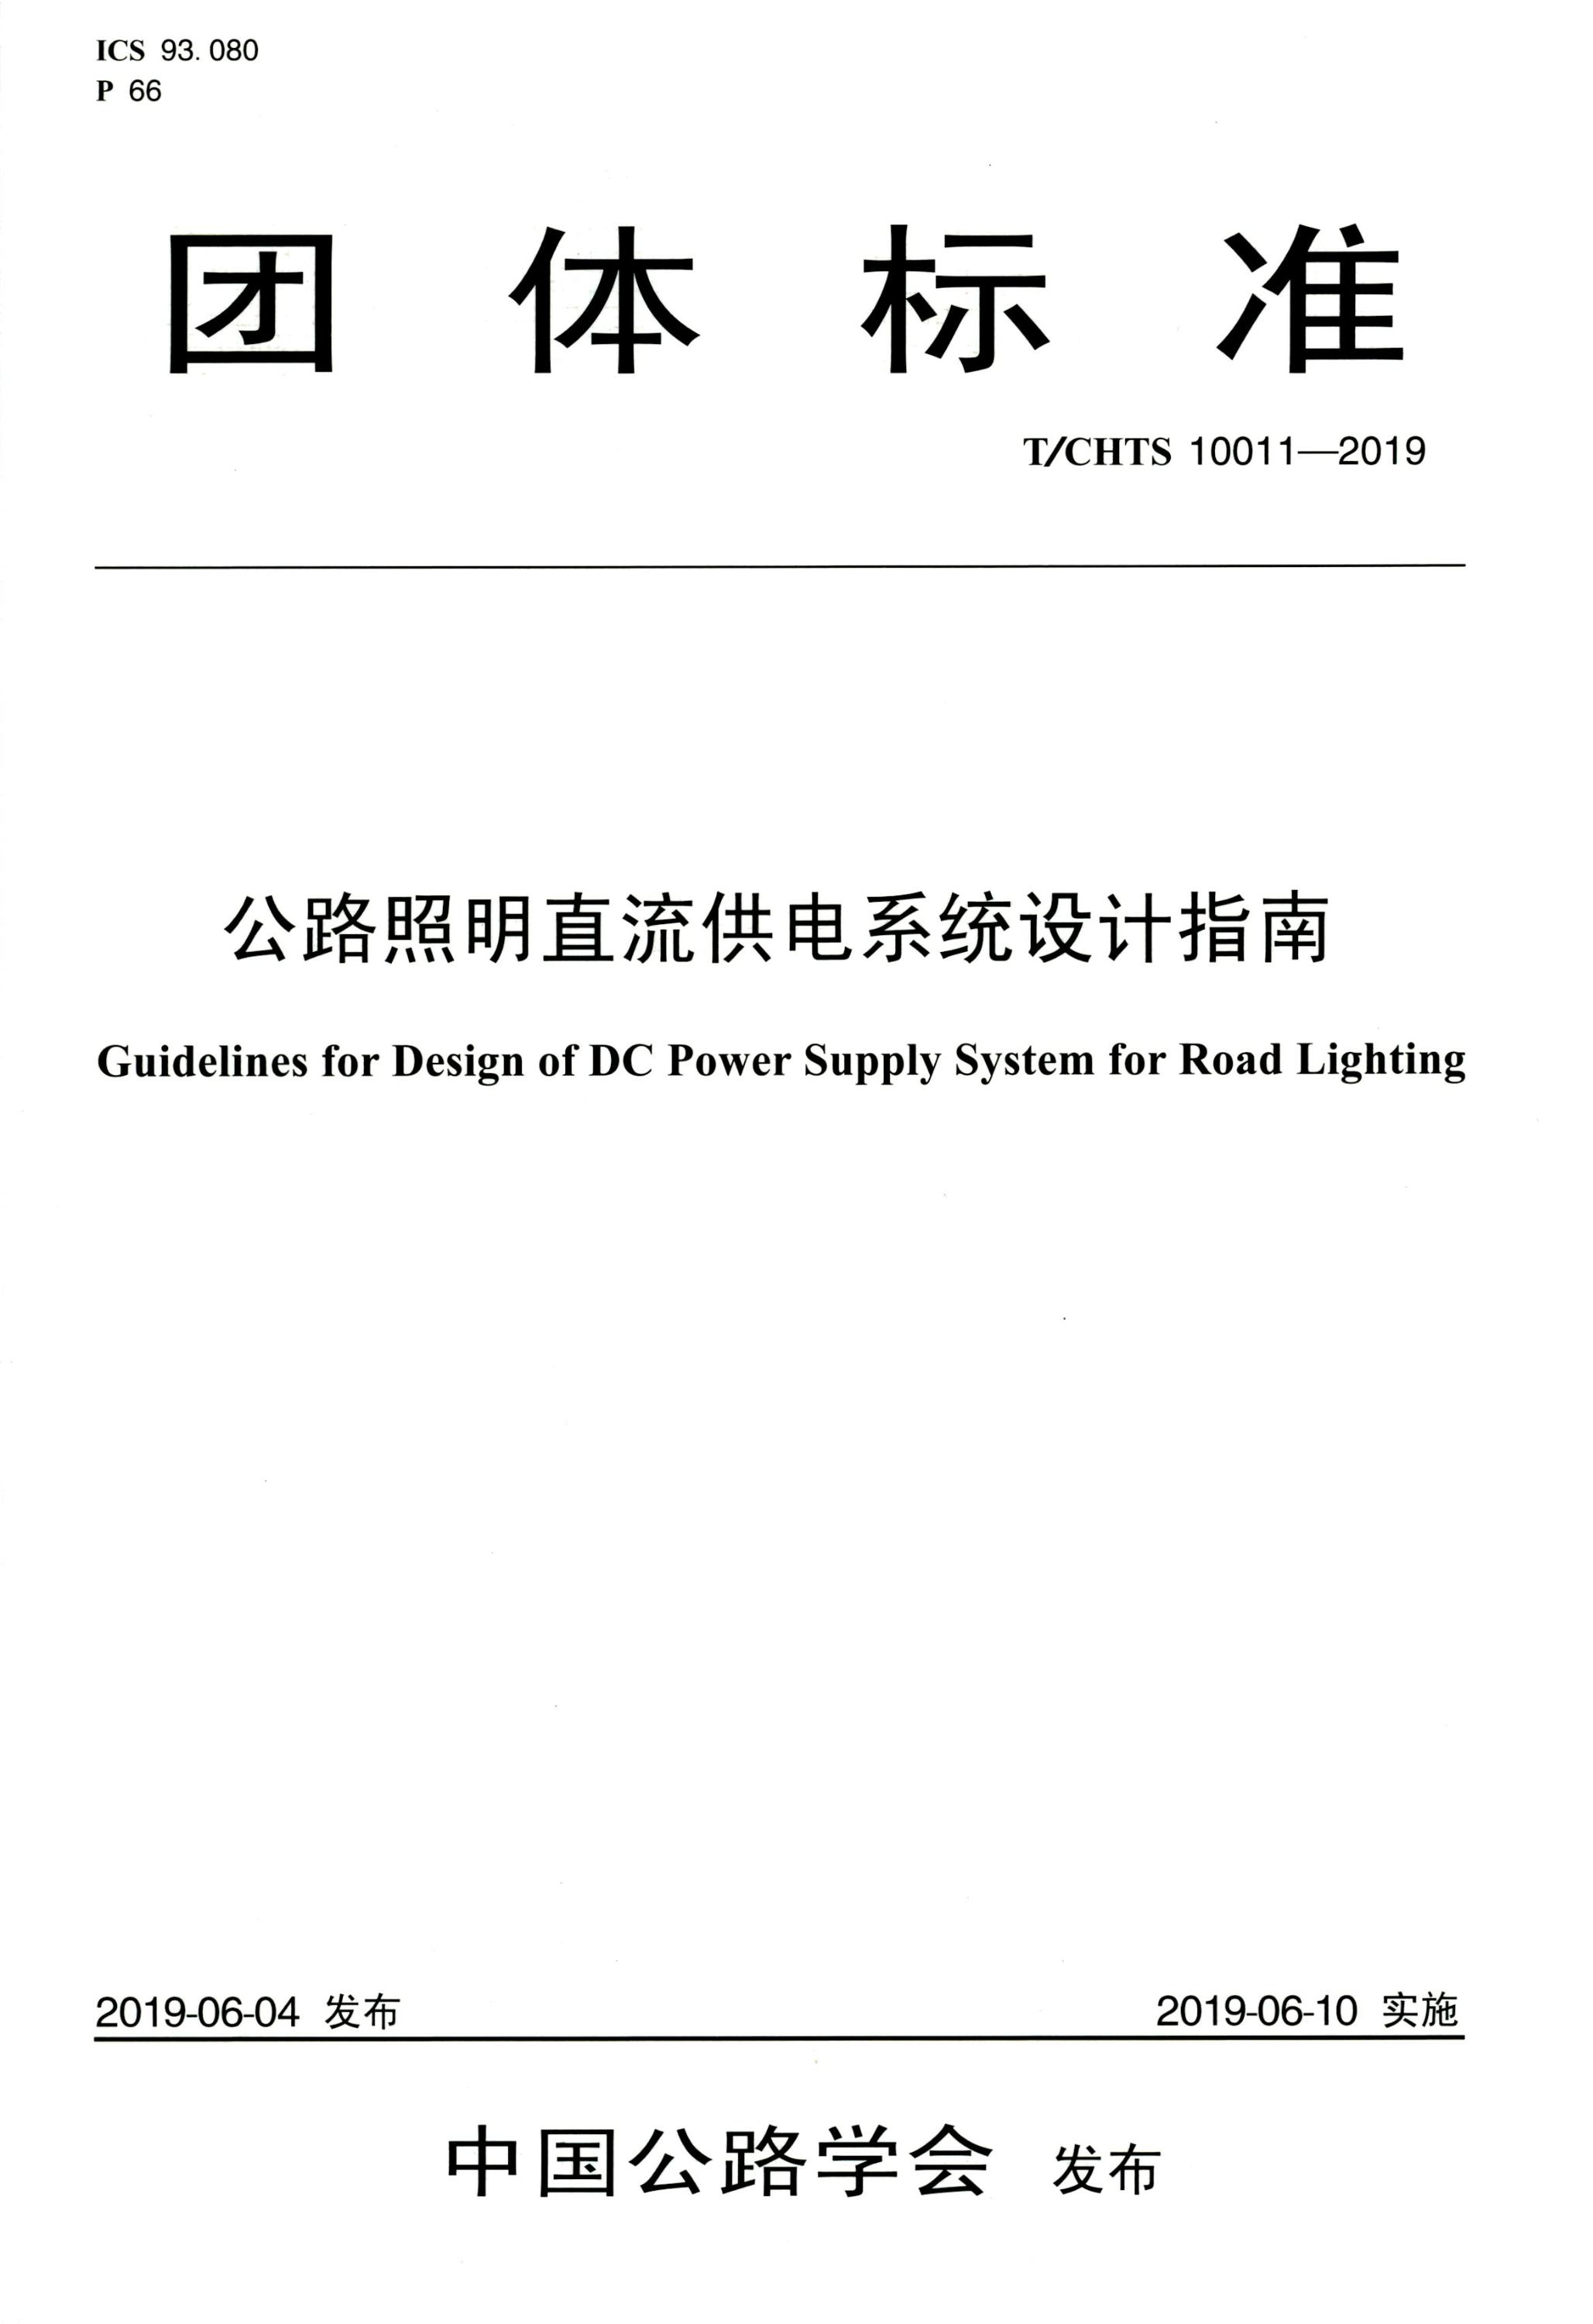 T∕CHTS 10011-2019 公路照明直流供电系统设计指南资源截图